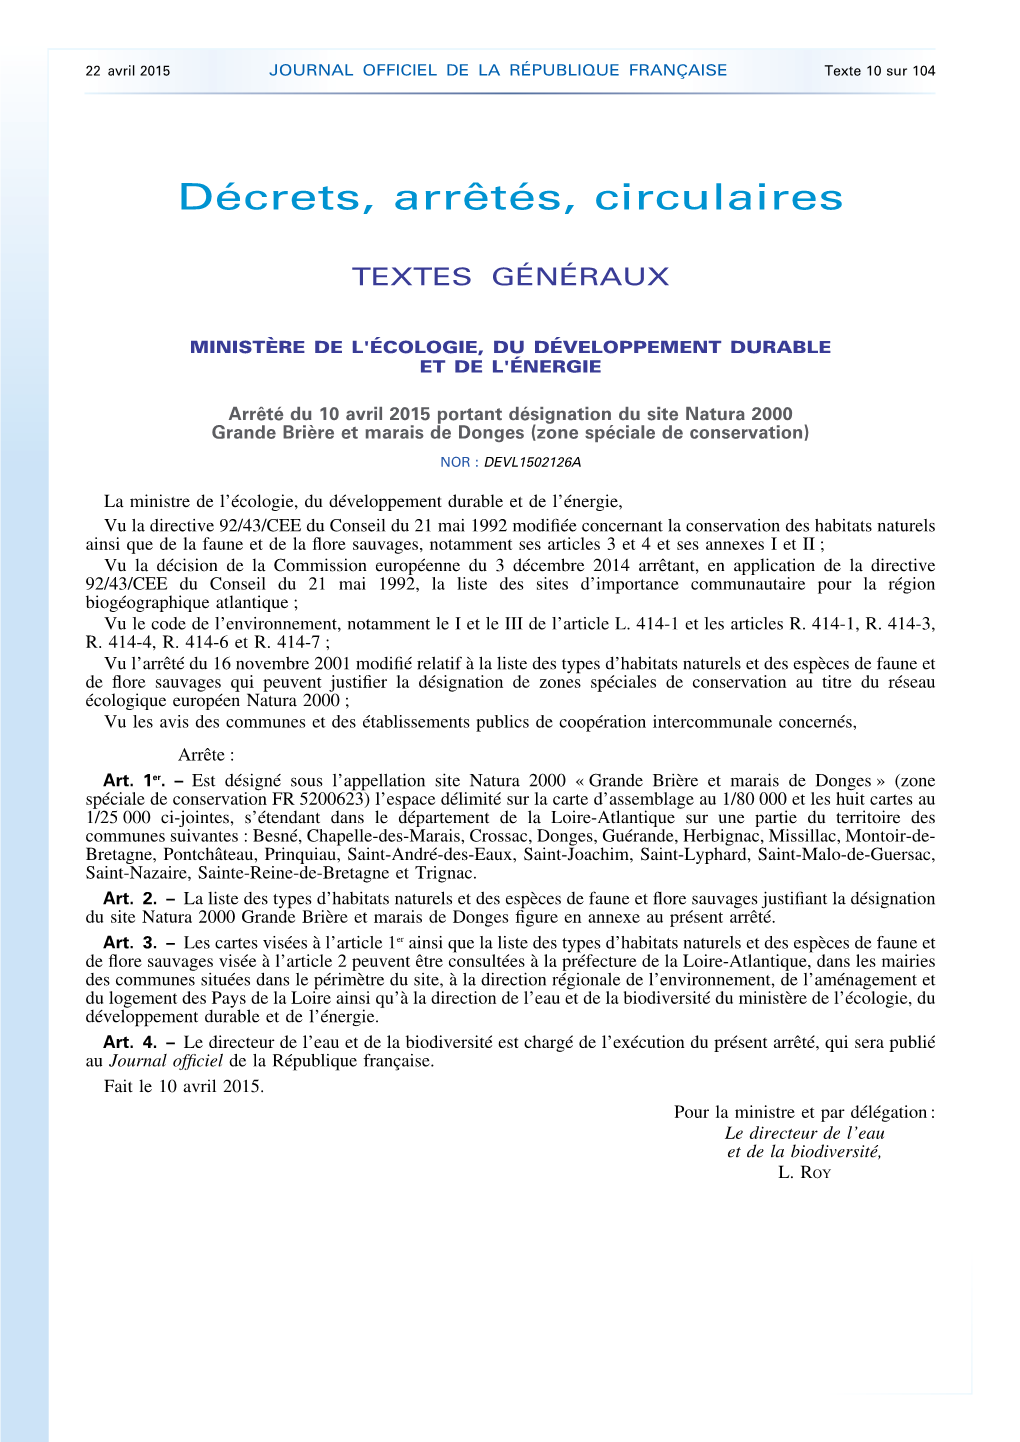 JOURNAL OFFICIEL DE LA RÉPUBLIQUE FRANÇAISE Texte 10 Sur 104